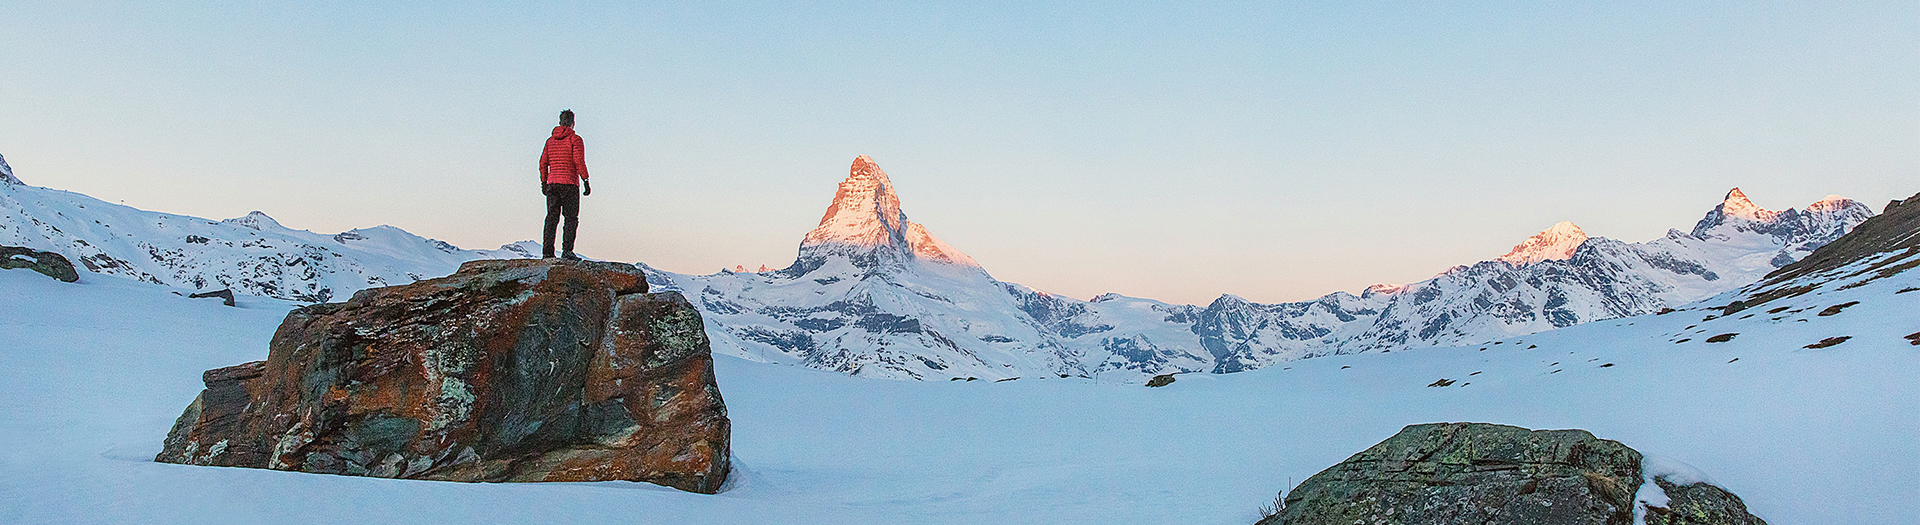 Matterhorn Goal